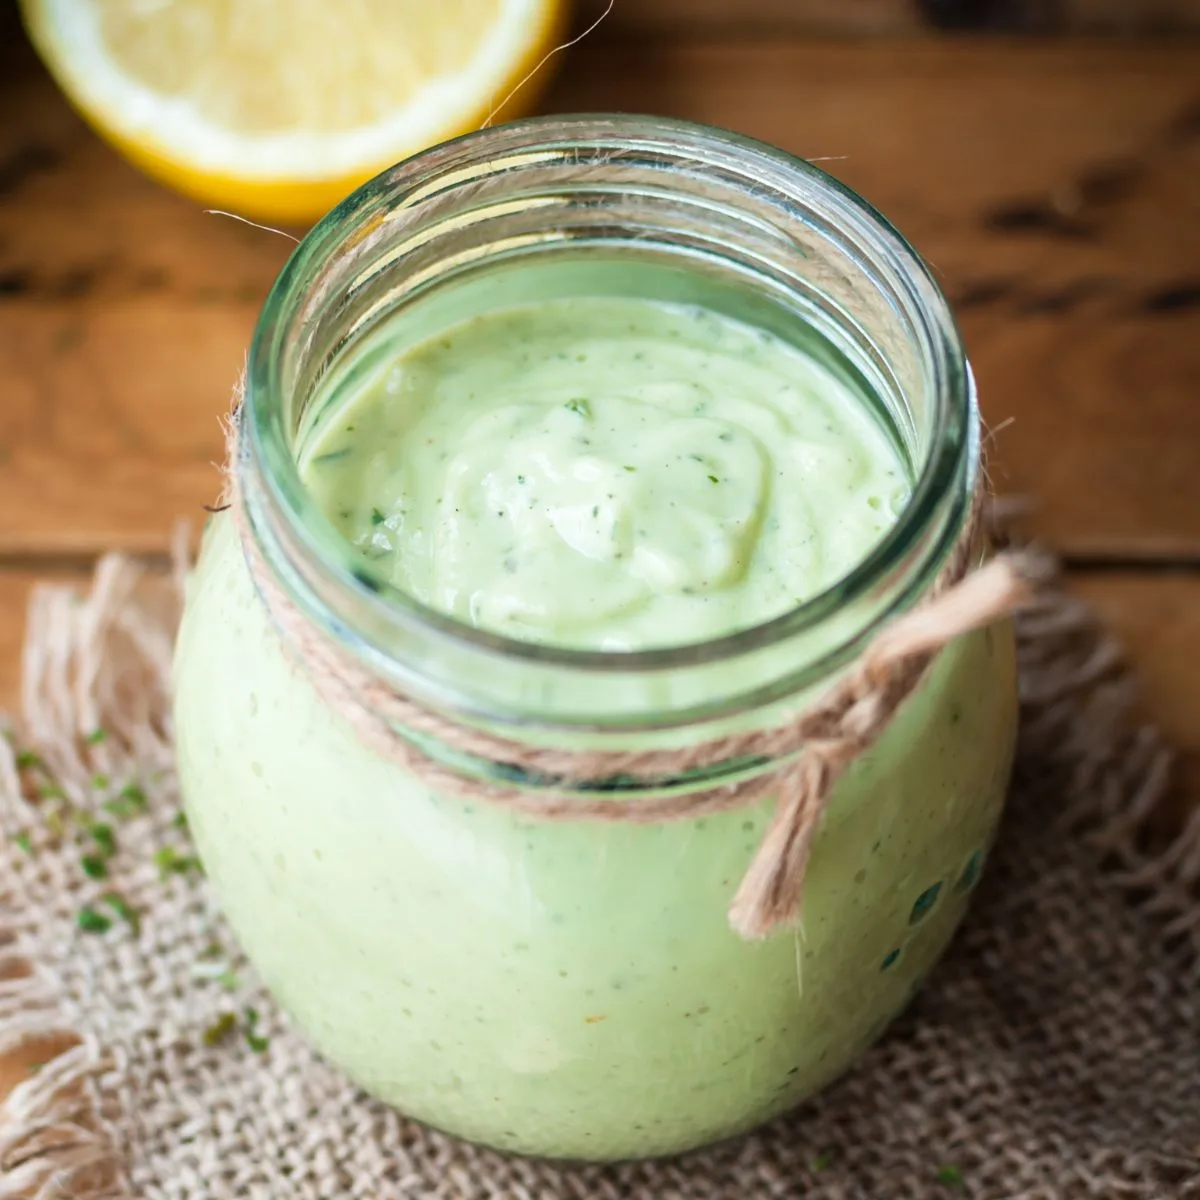 Creamy avocado dressing in a jar